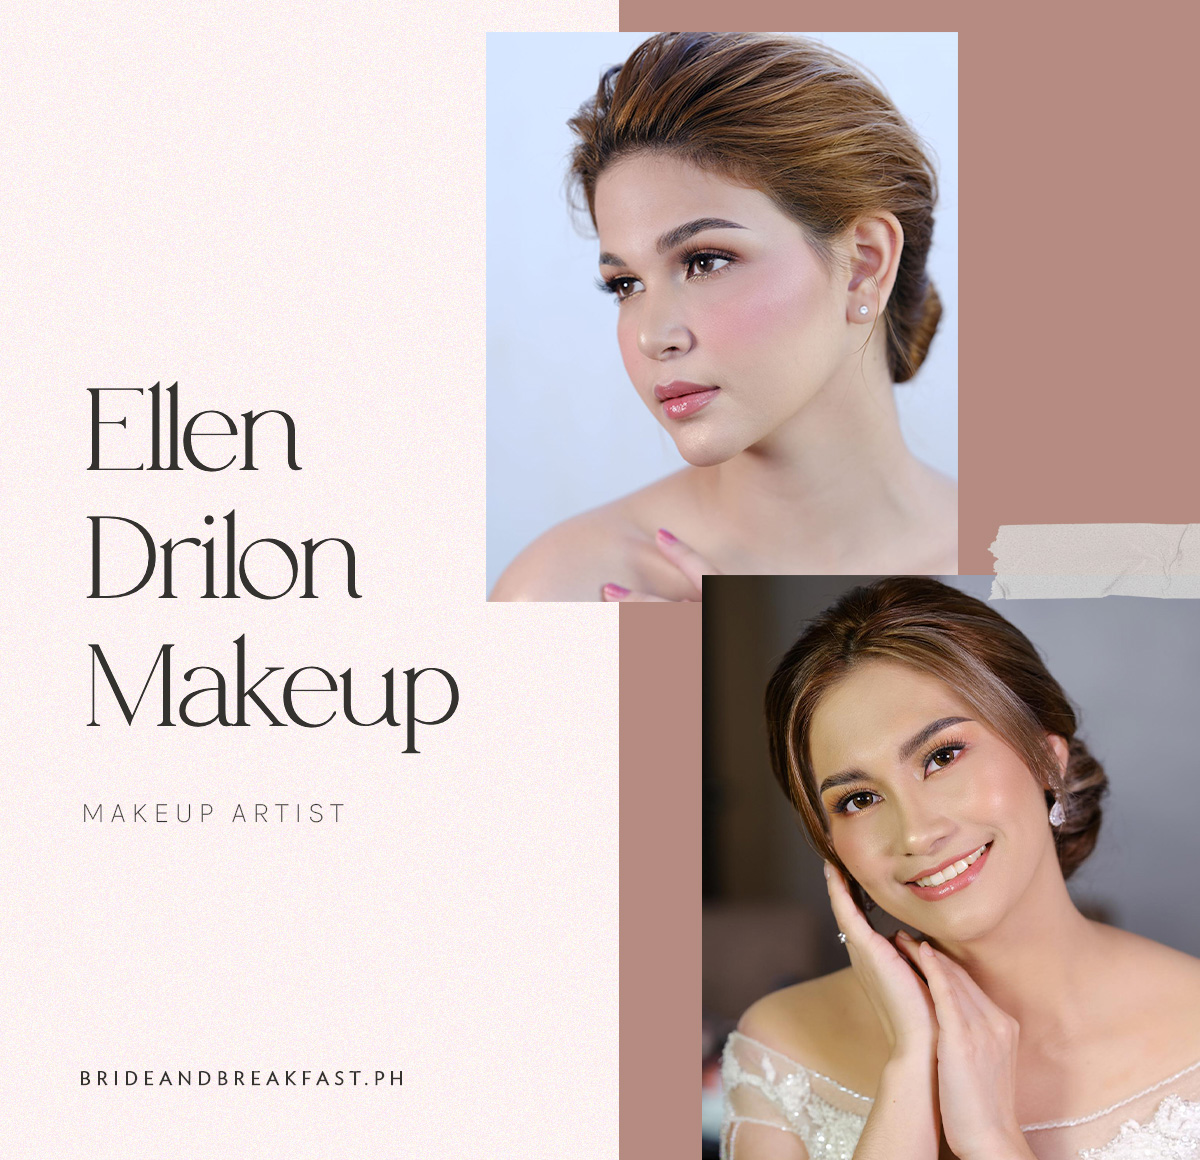 Ellen Drilon Makeup